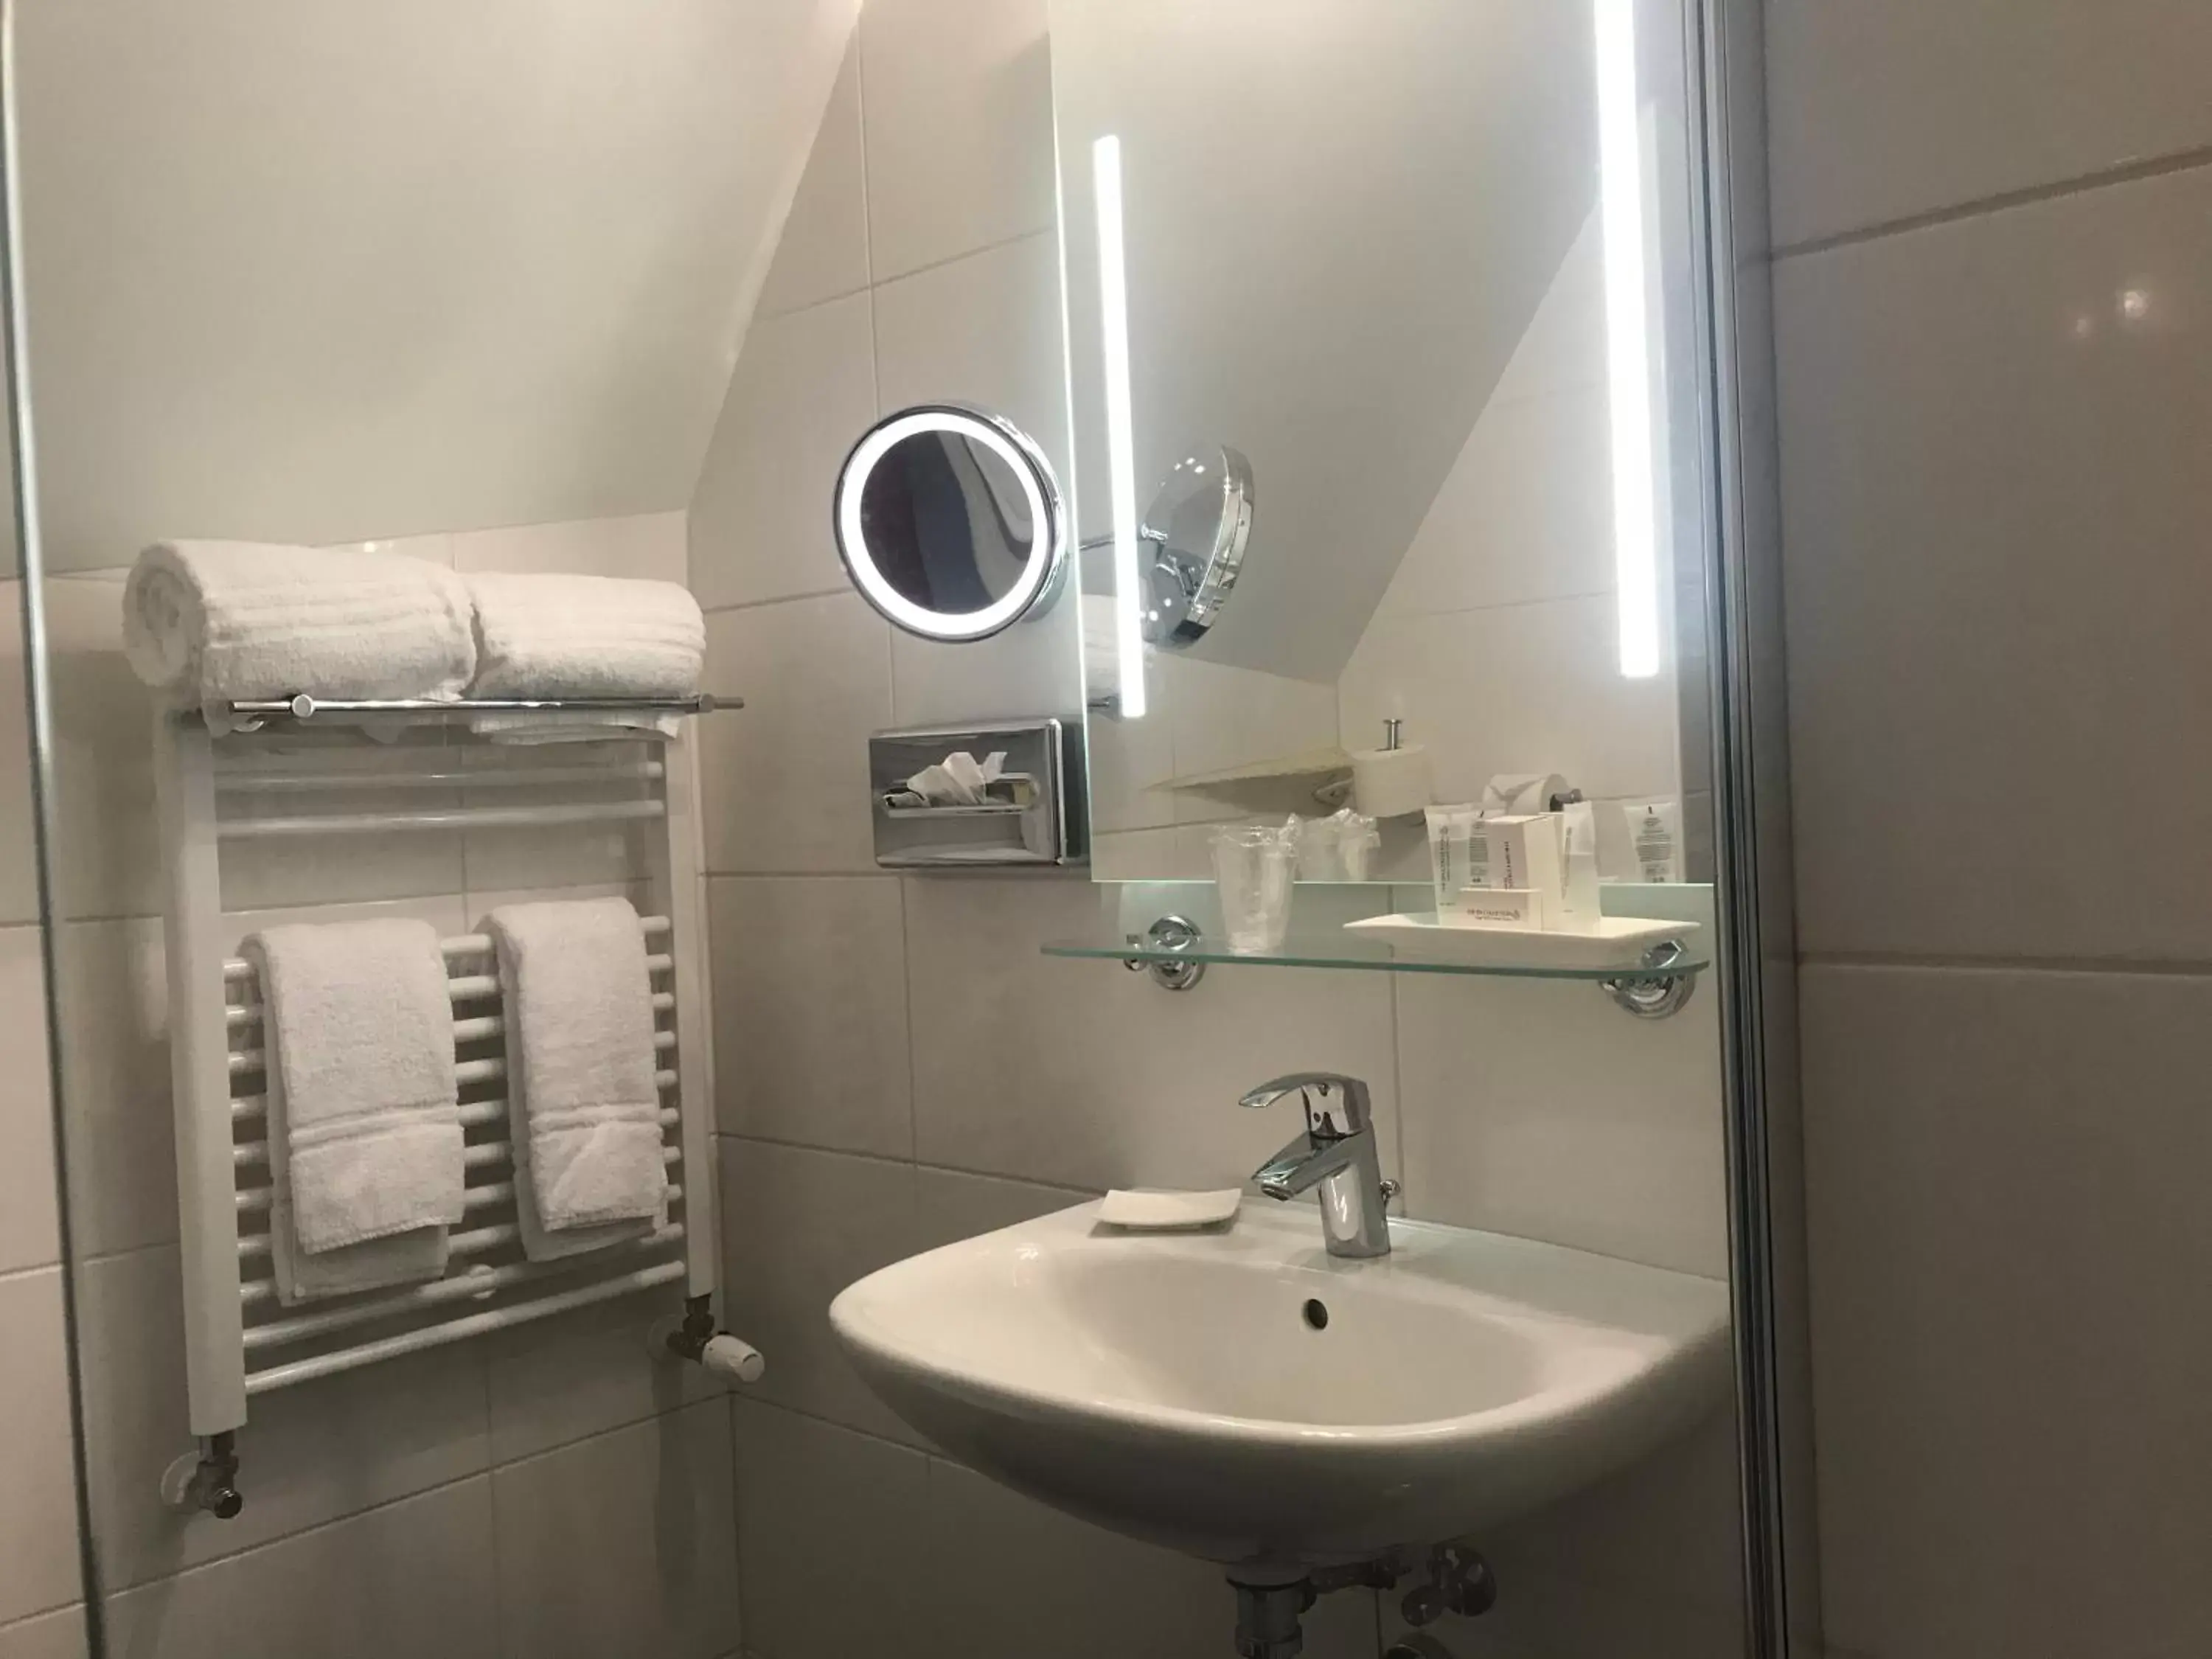 Photo of the whole room, Bathroom in Hotel De Gulden Waagen